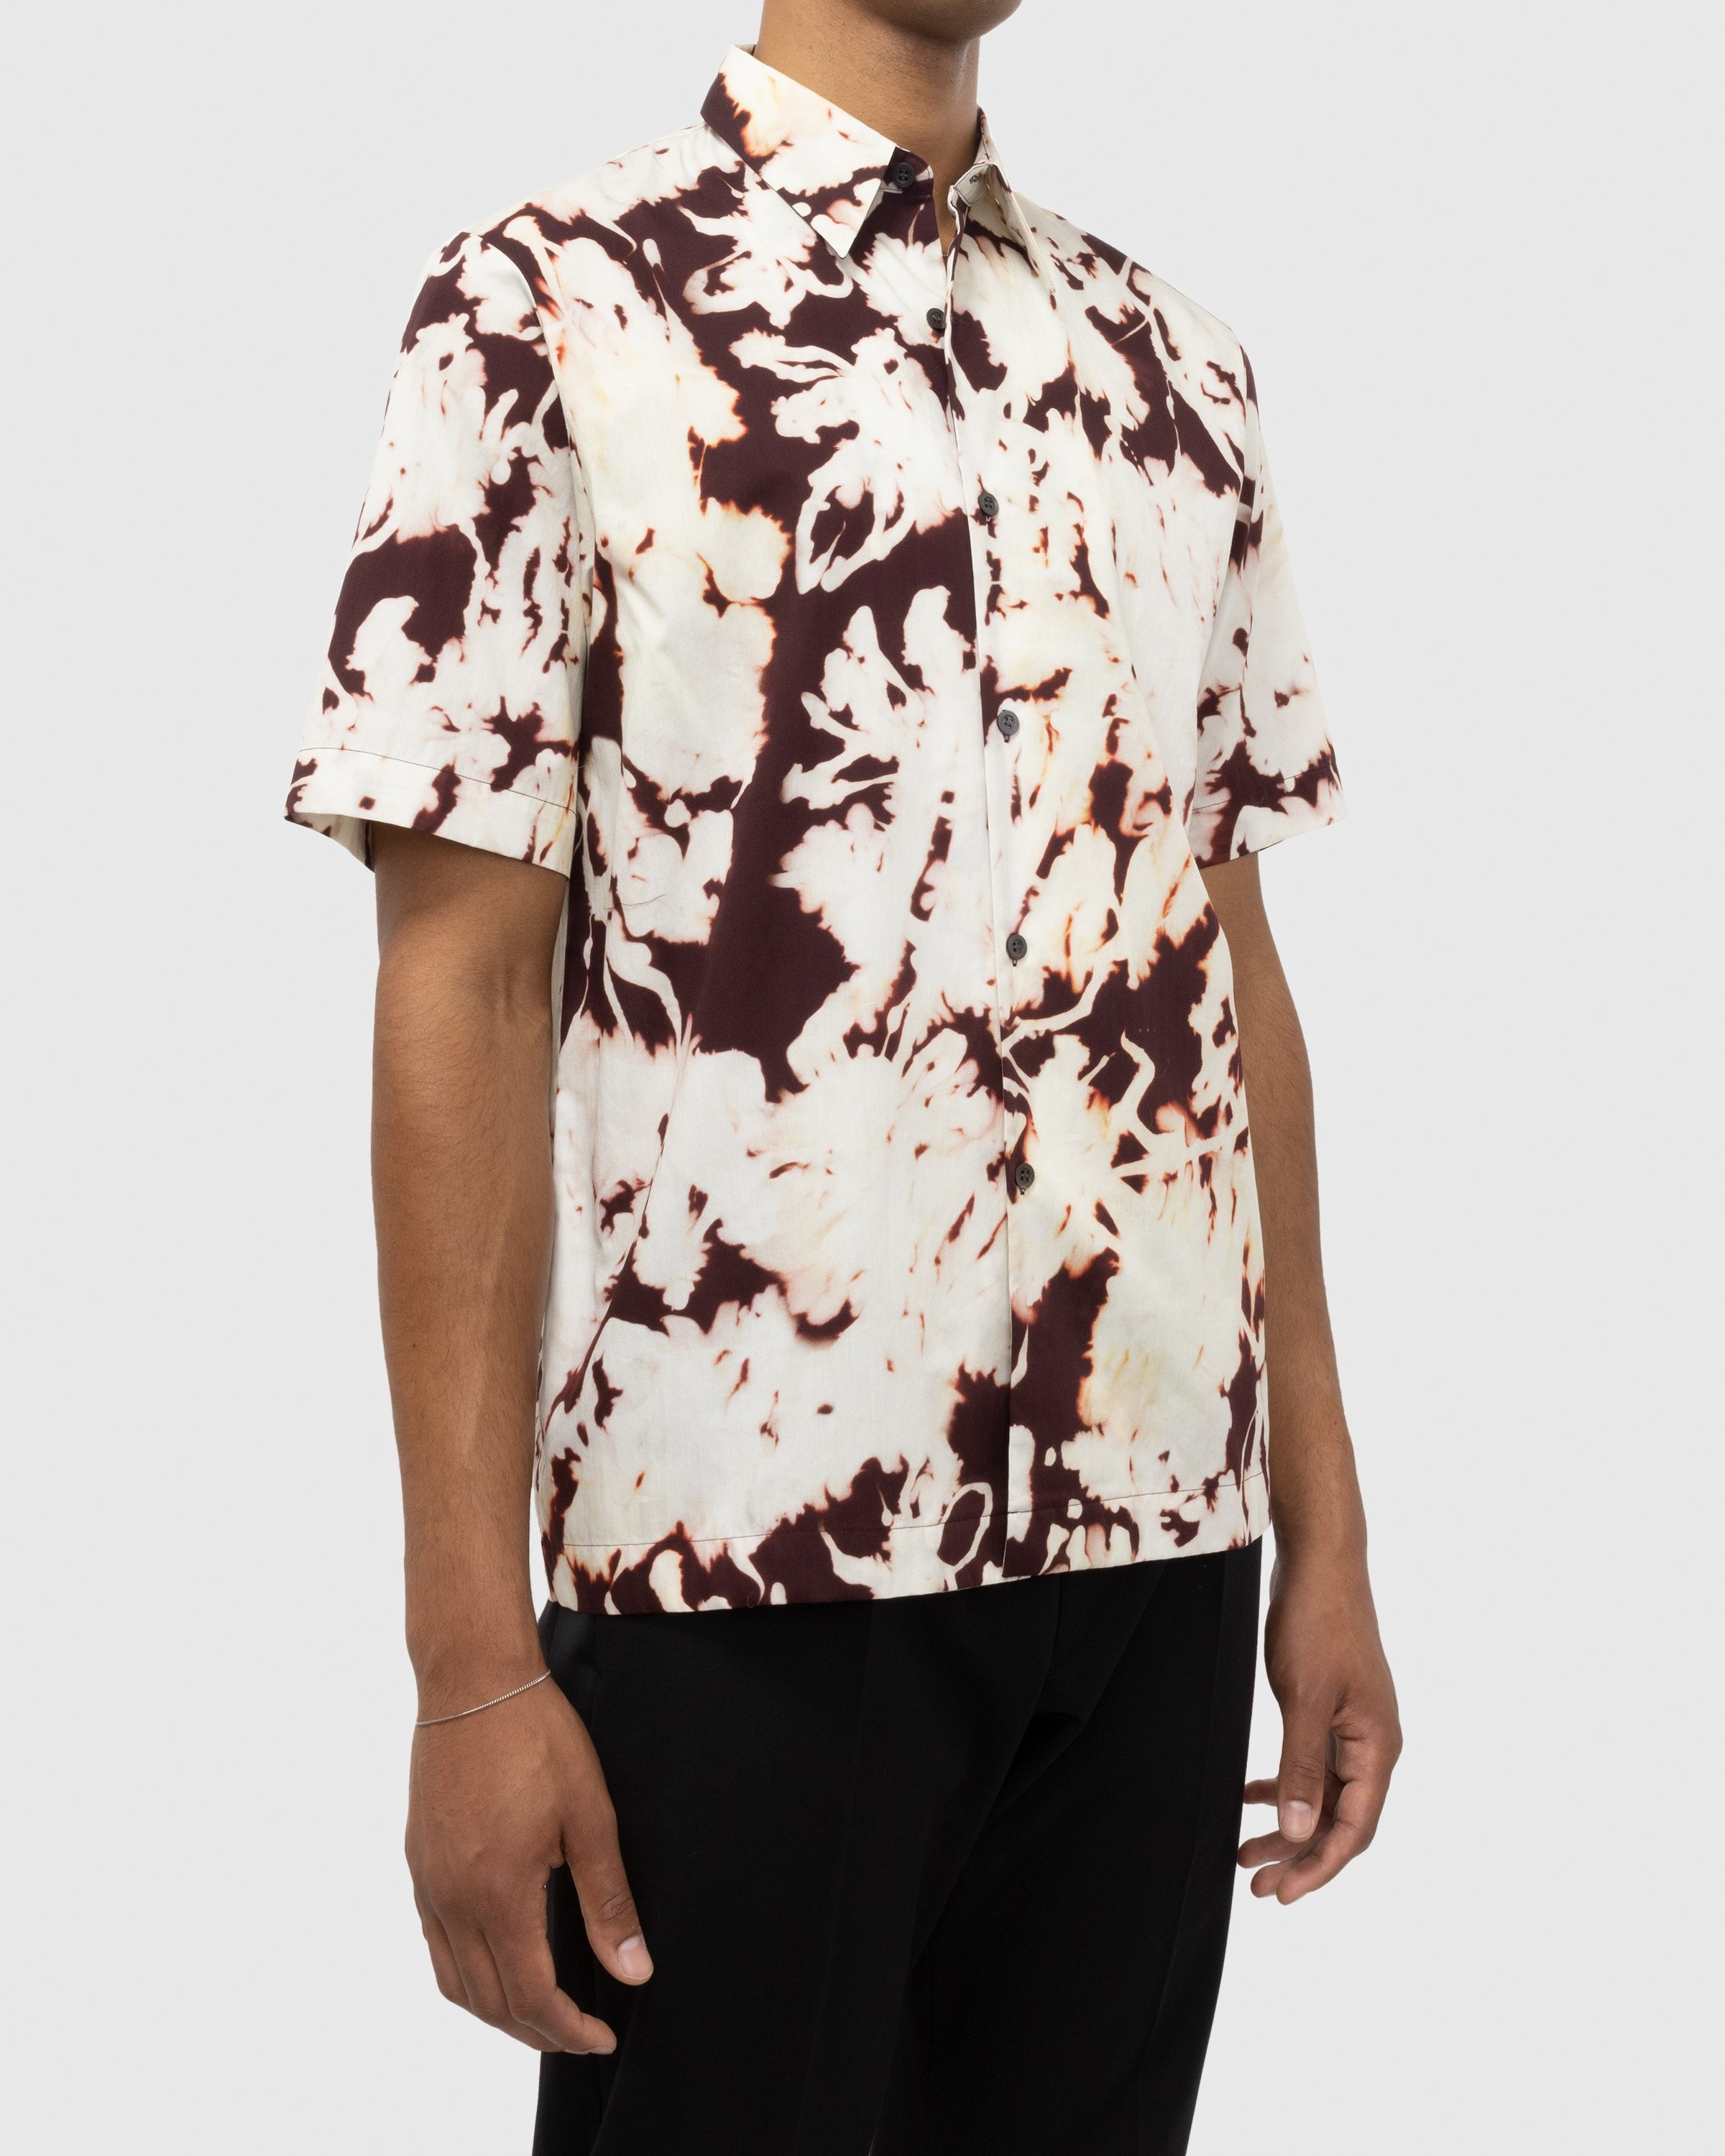 Dries van Noten – Clasen Shirt Multi - Shortsleeve Shirts - Multi - Image 2